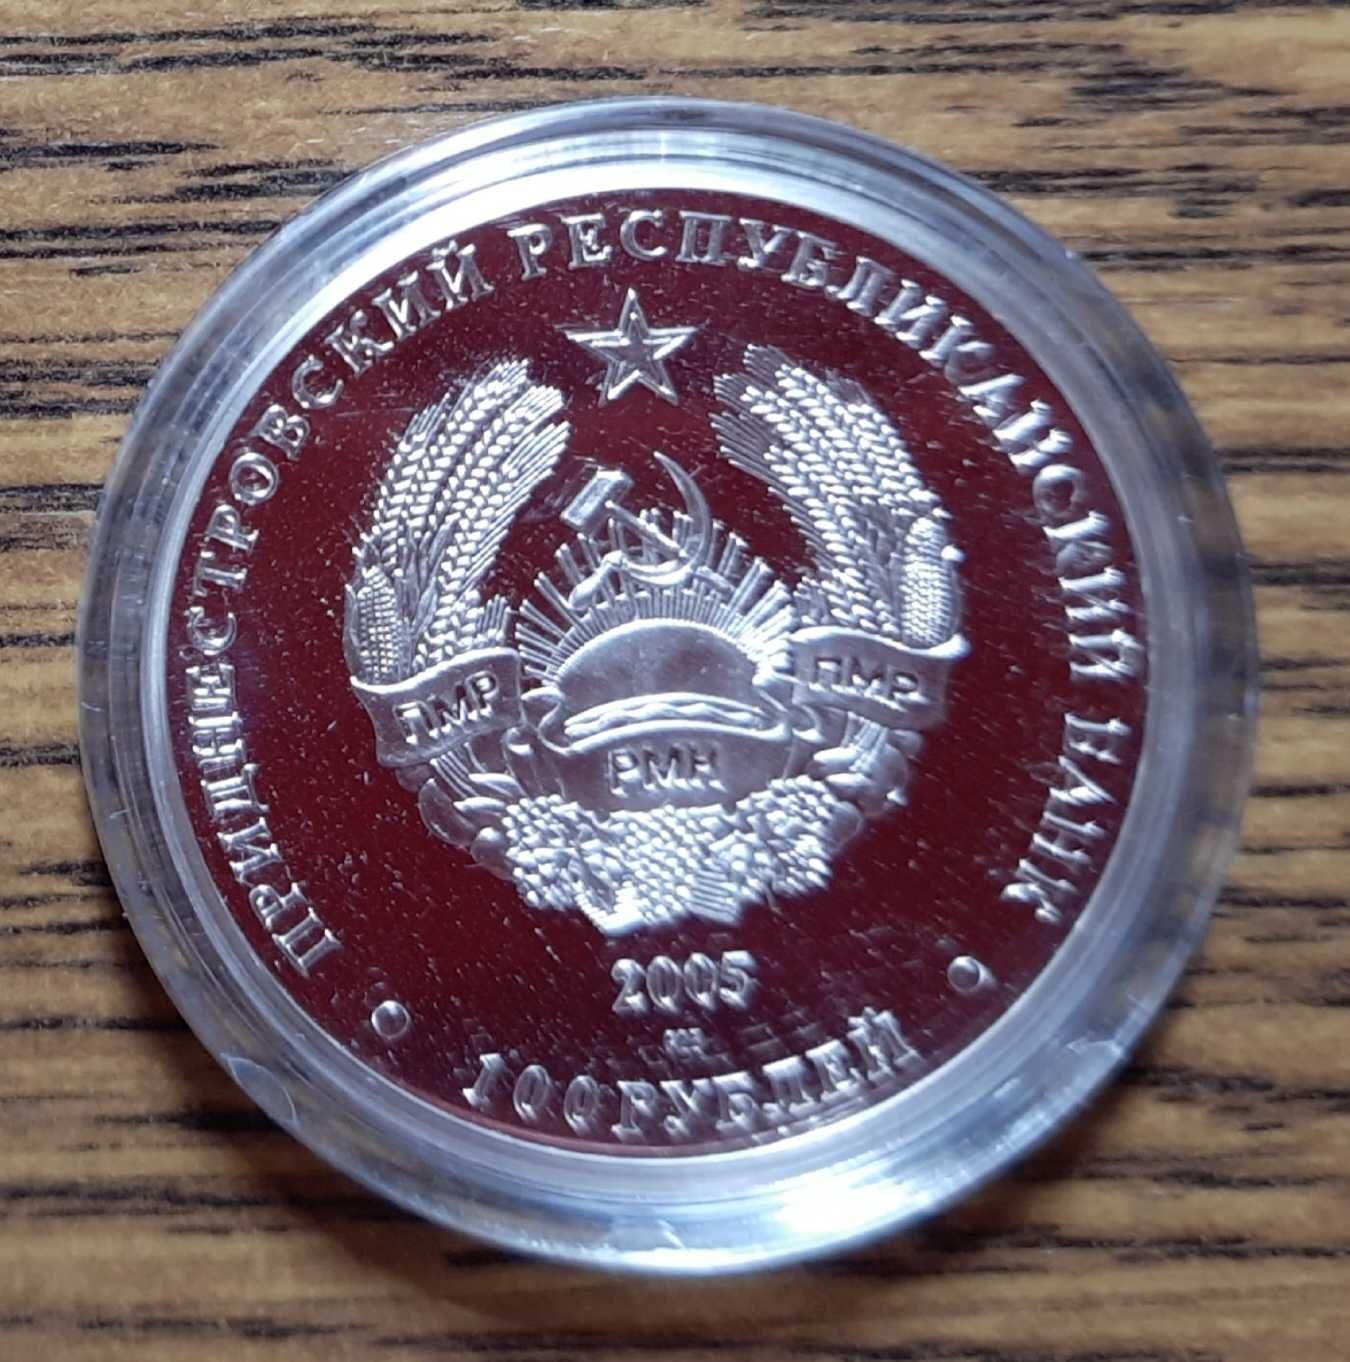 2 srebrne monety z Naddniestrza - 100 rubli - Sęp i motyl